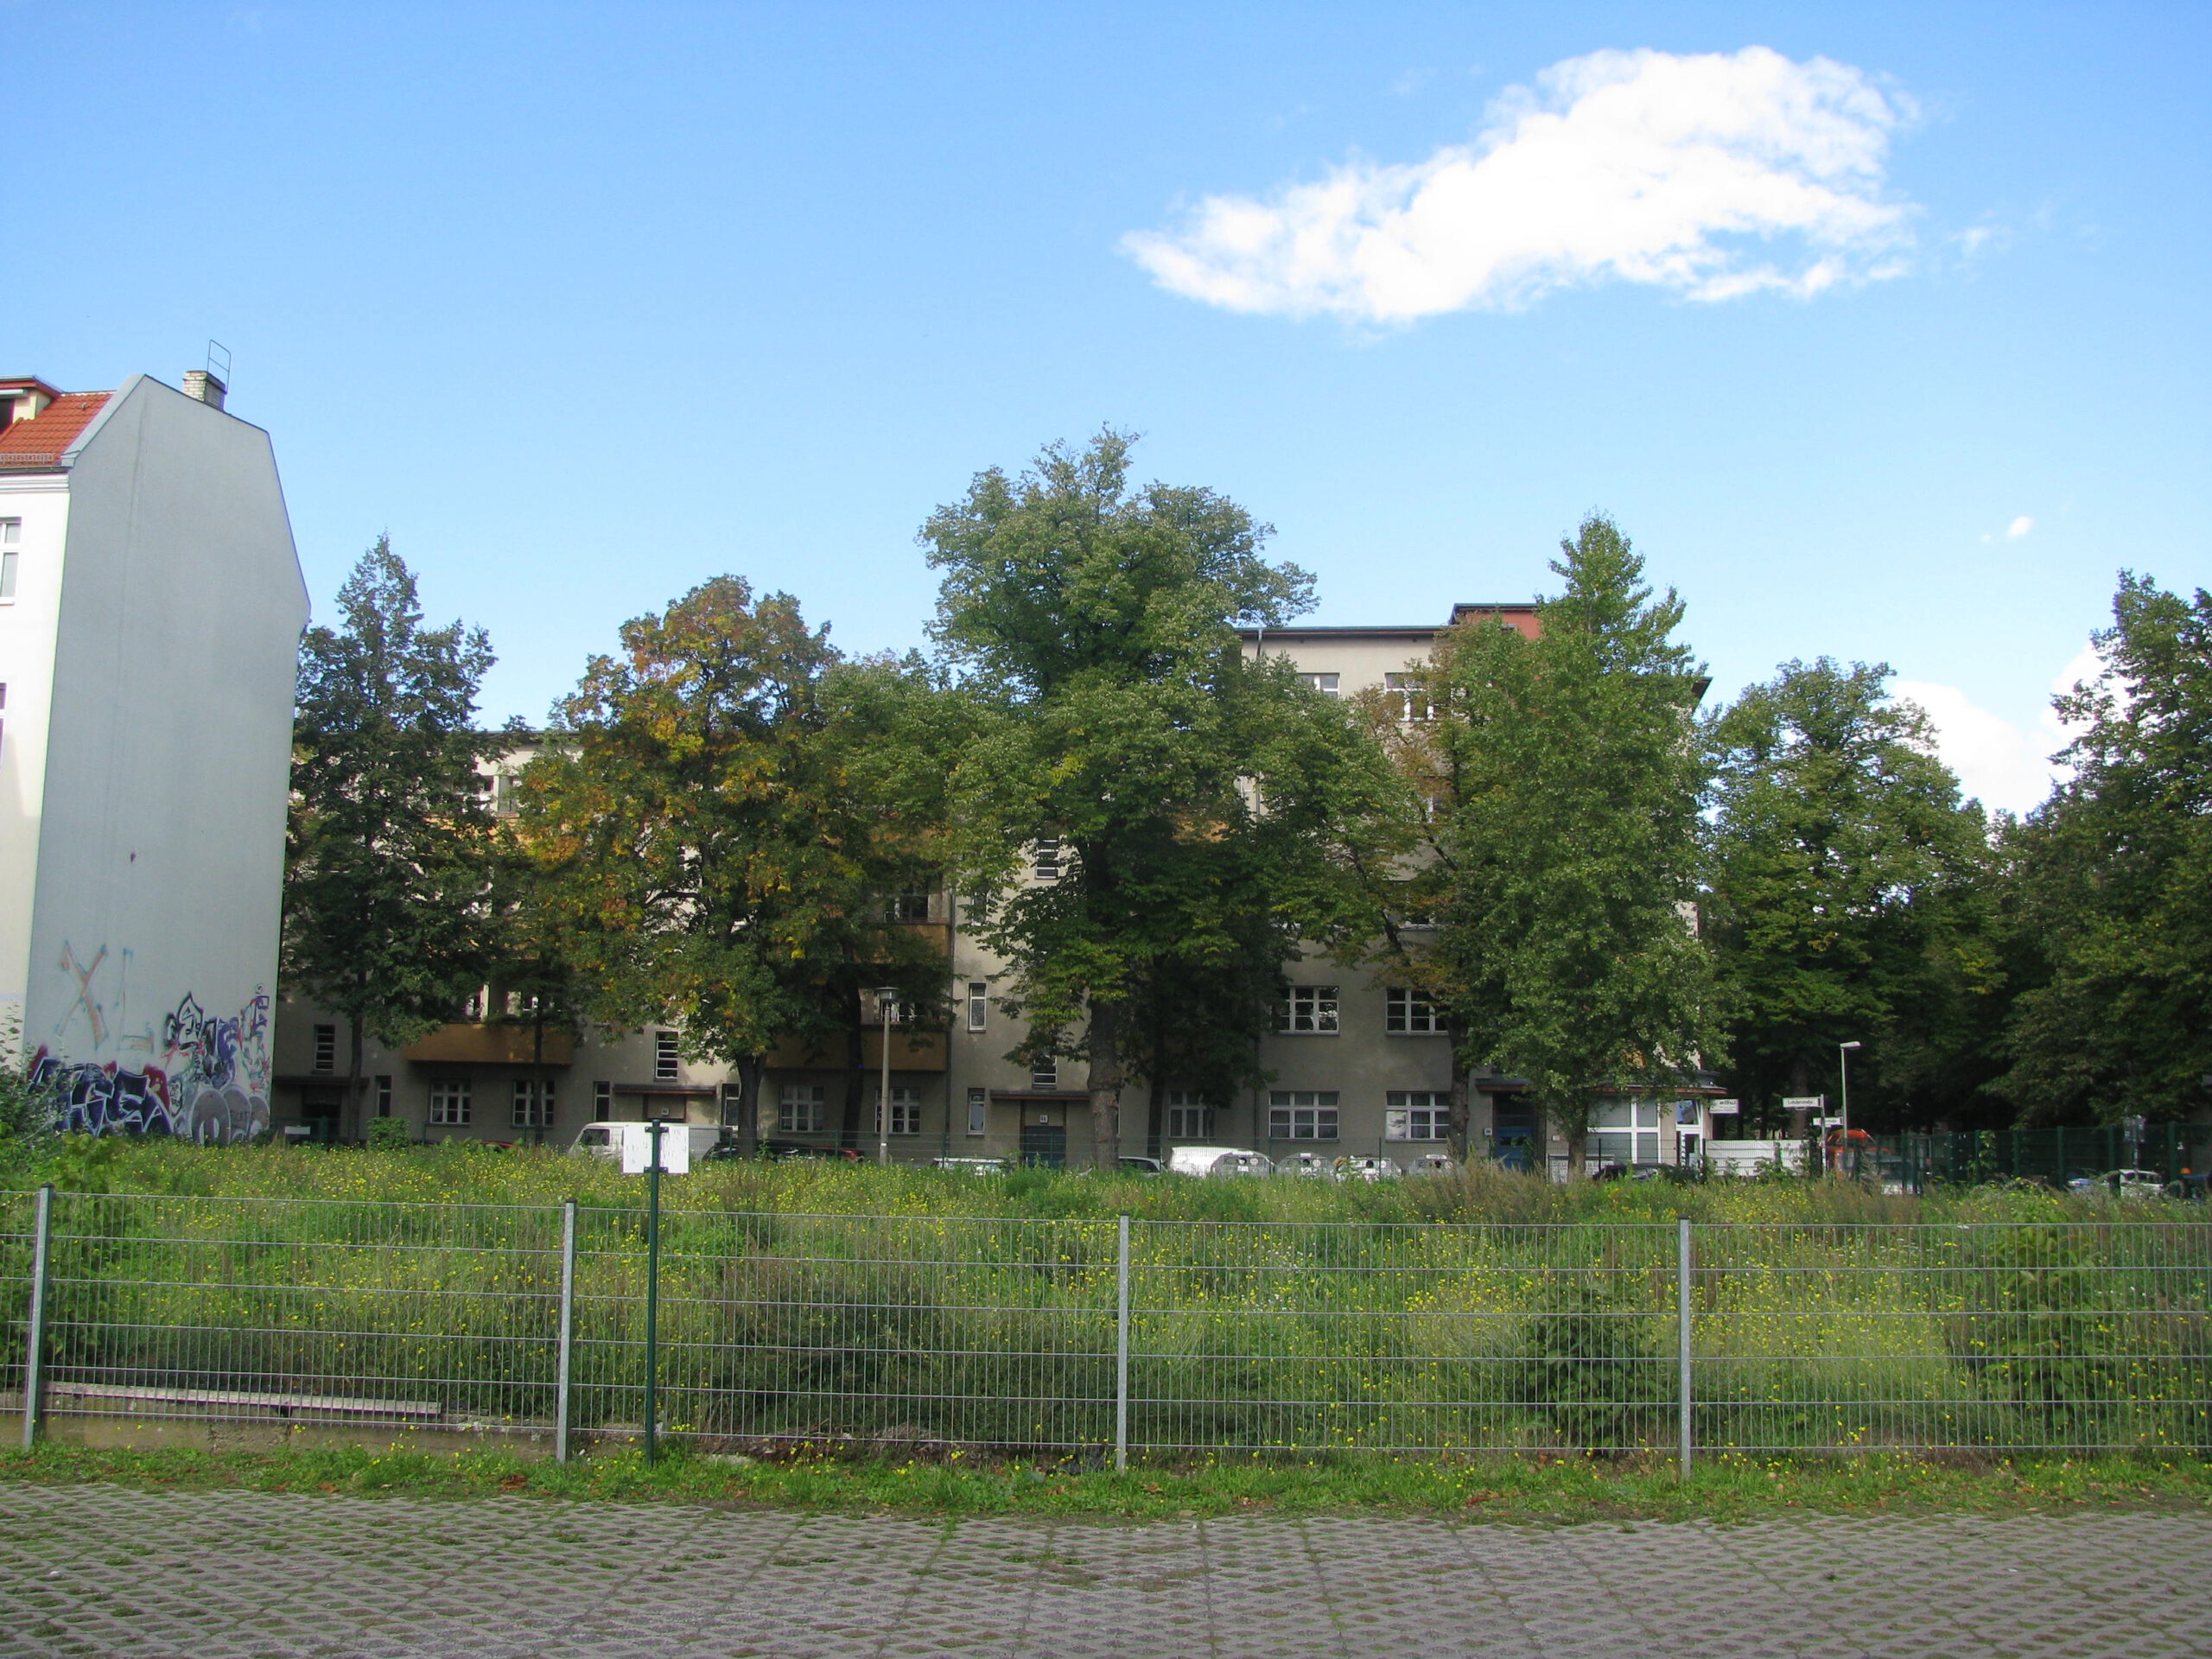 Brachfläche mit Häusern im Hintergrund - B1 Spielplatz Goethestr. 9, 11, Lehderstr. 73 - 21.09.2022